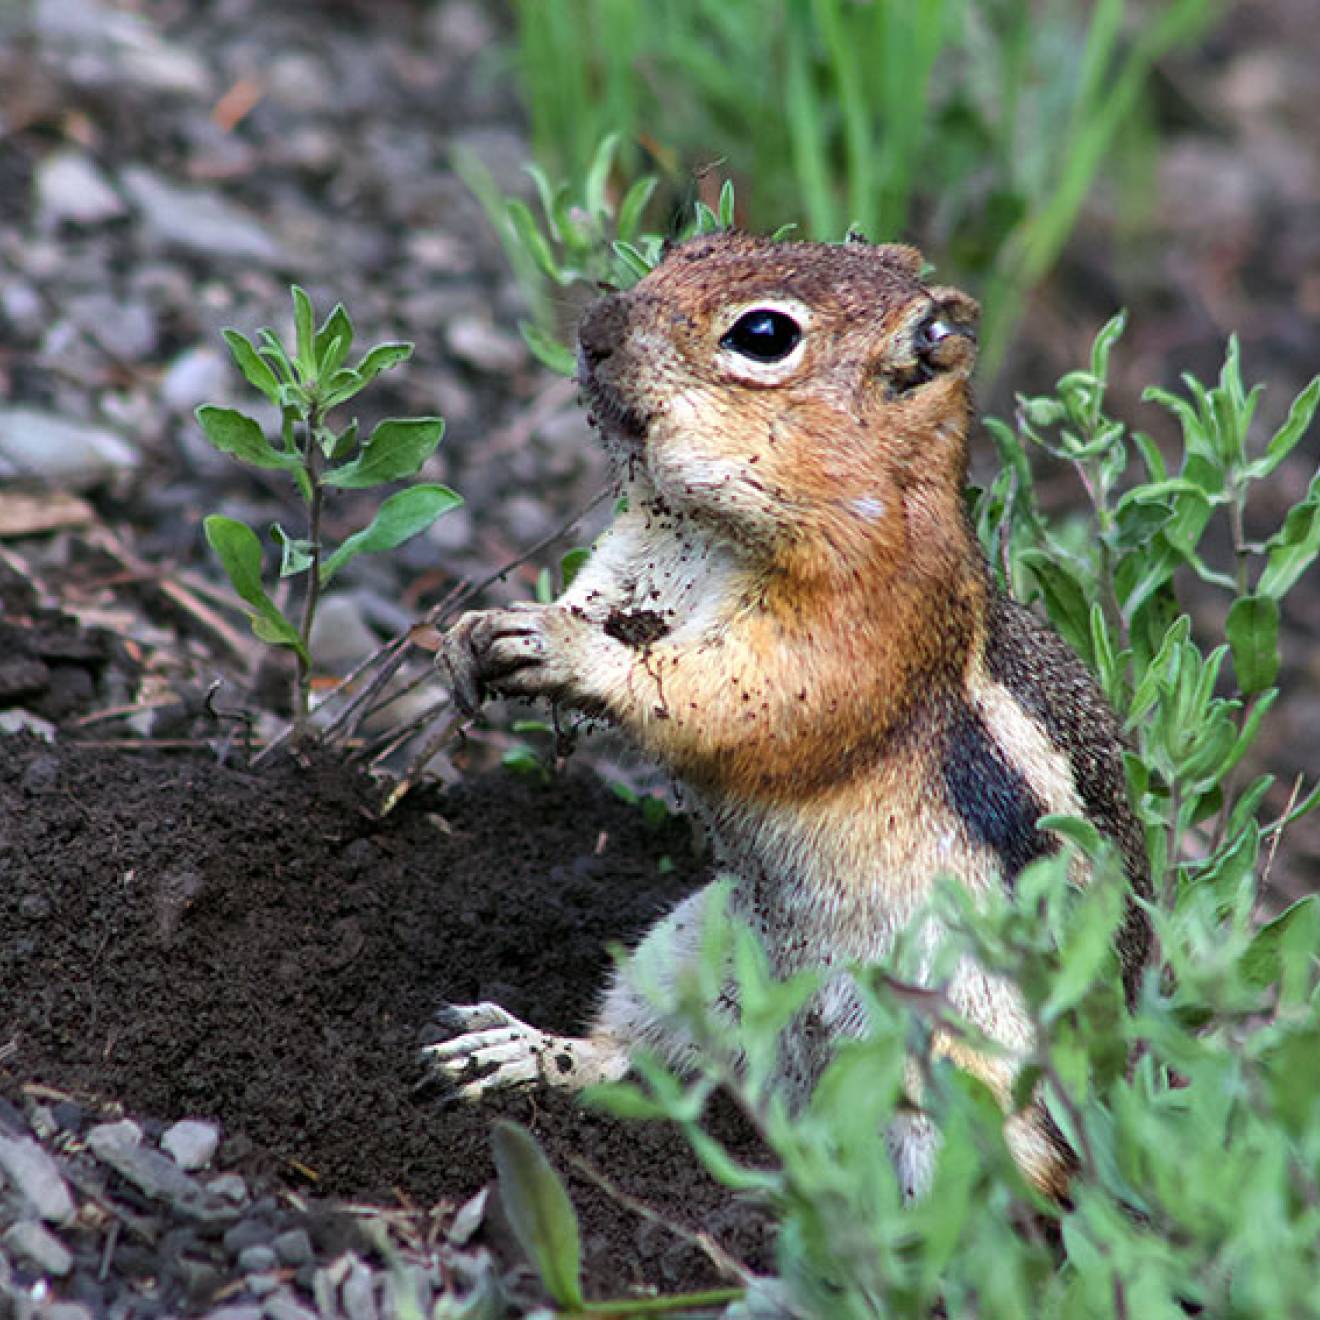 A golden-mantled ground squirrel 